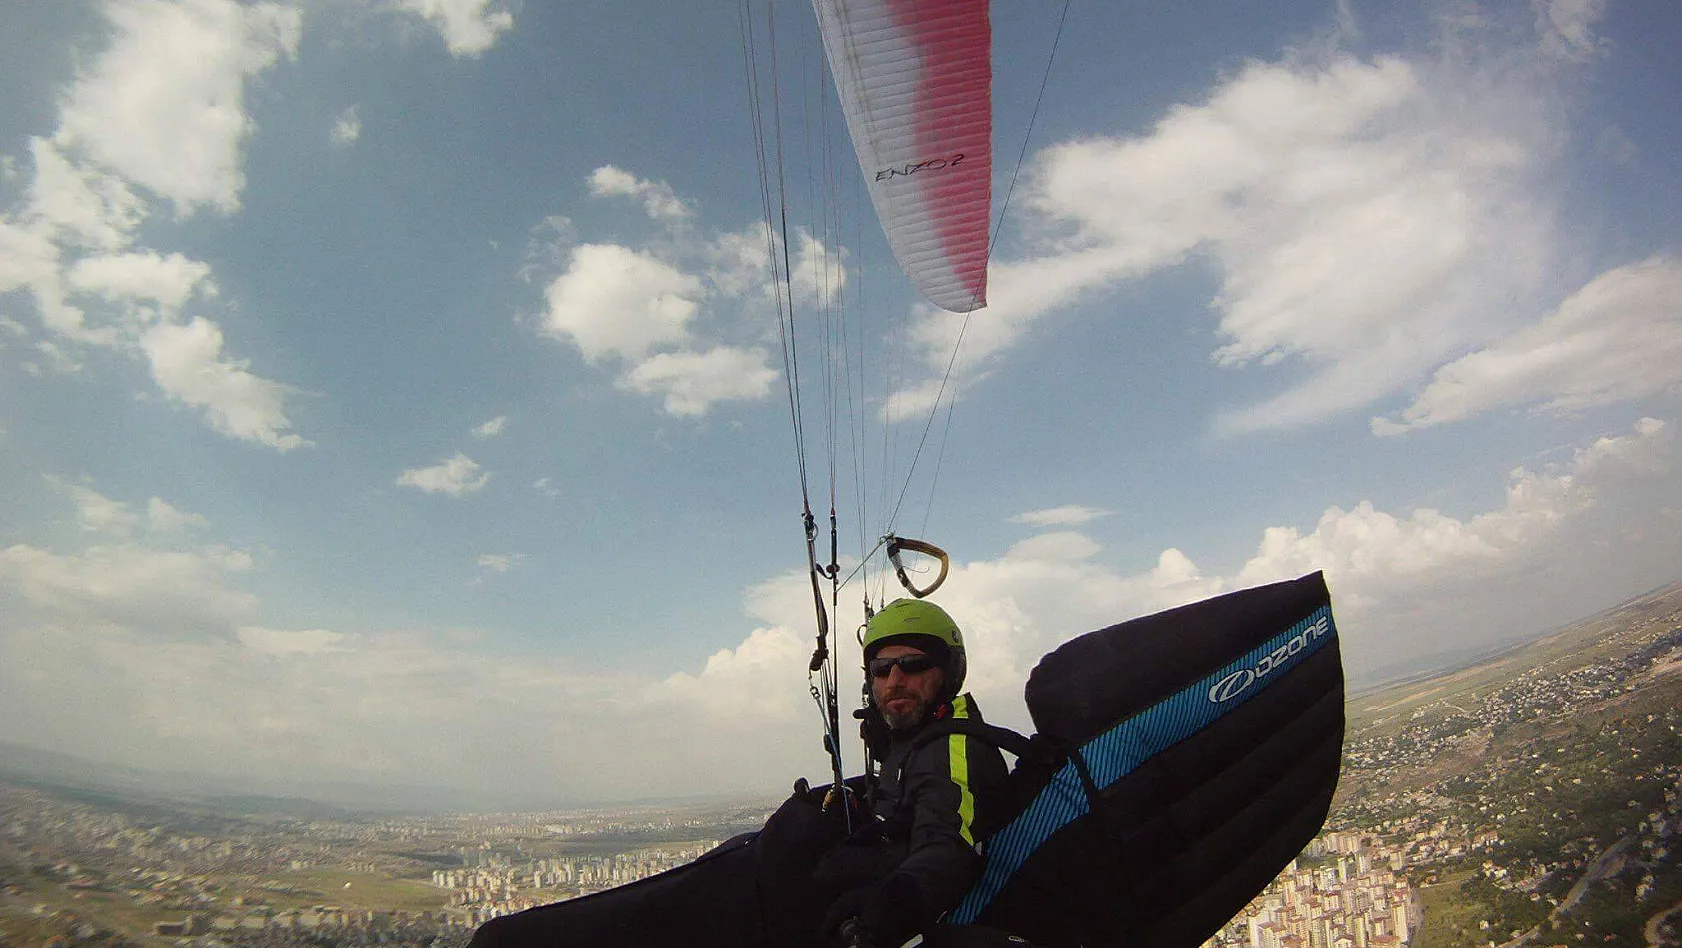 Yamaç paraşütü tutkunu Kavuncu, 15 metre yükseklikten düşerek hayatını kaybetti